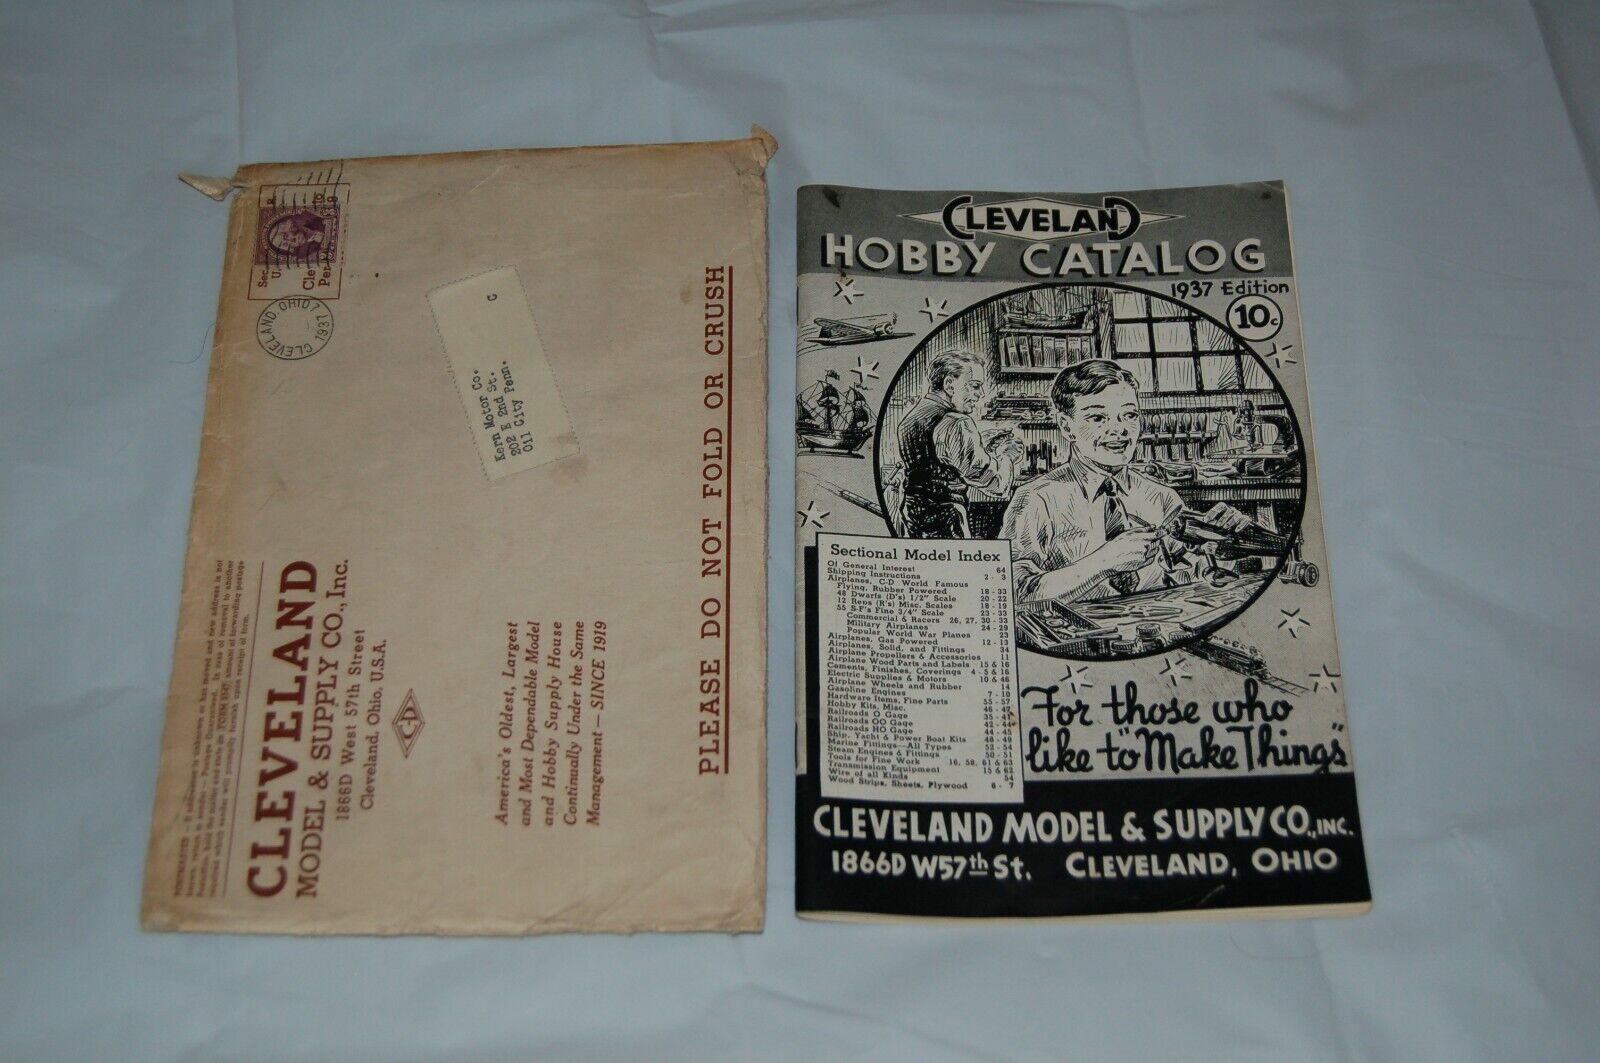 ORIGINAL CLEVELAND HOBBY CATALOG 1937 ORIGINAL ENVELOPE 3 CENT W